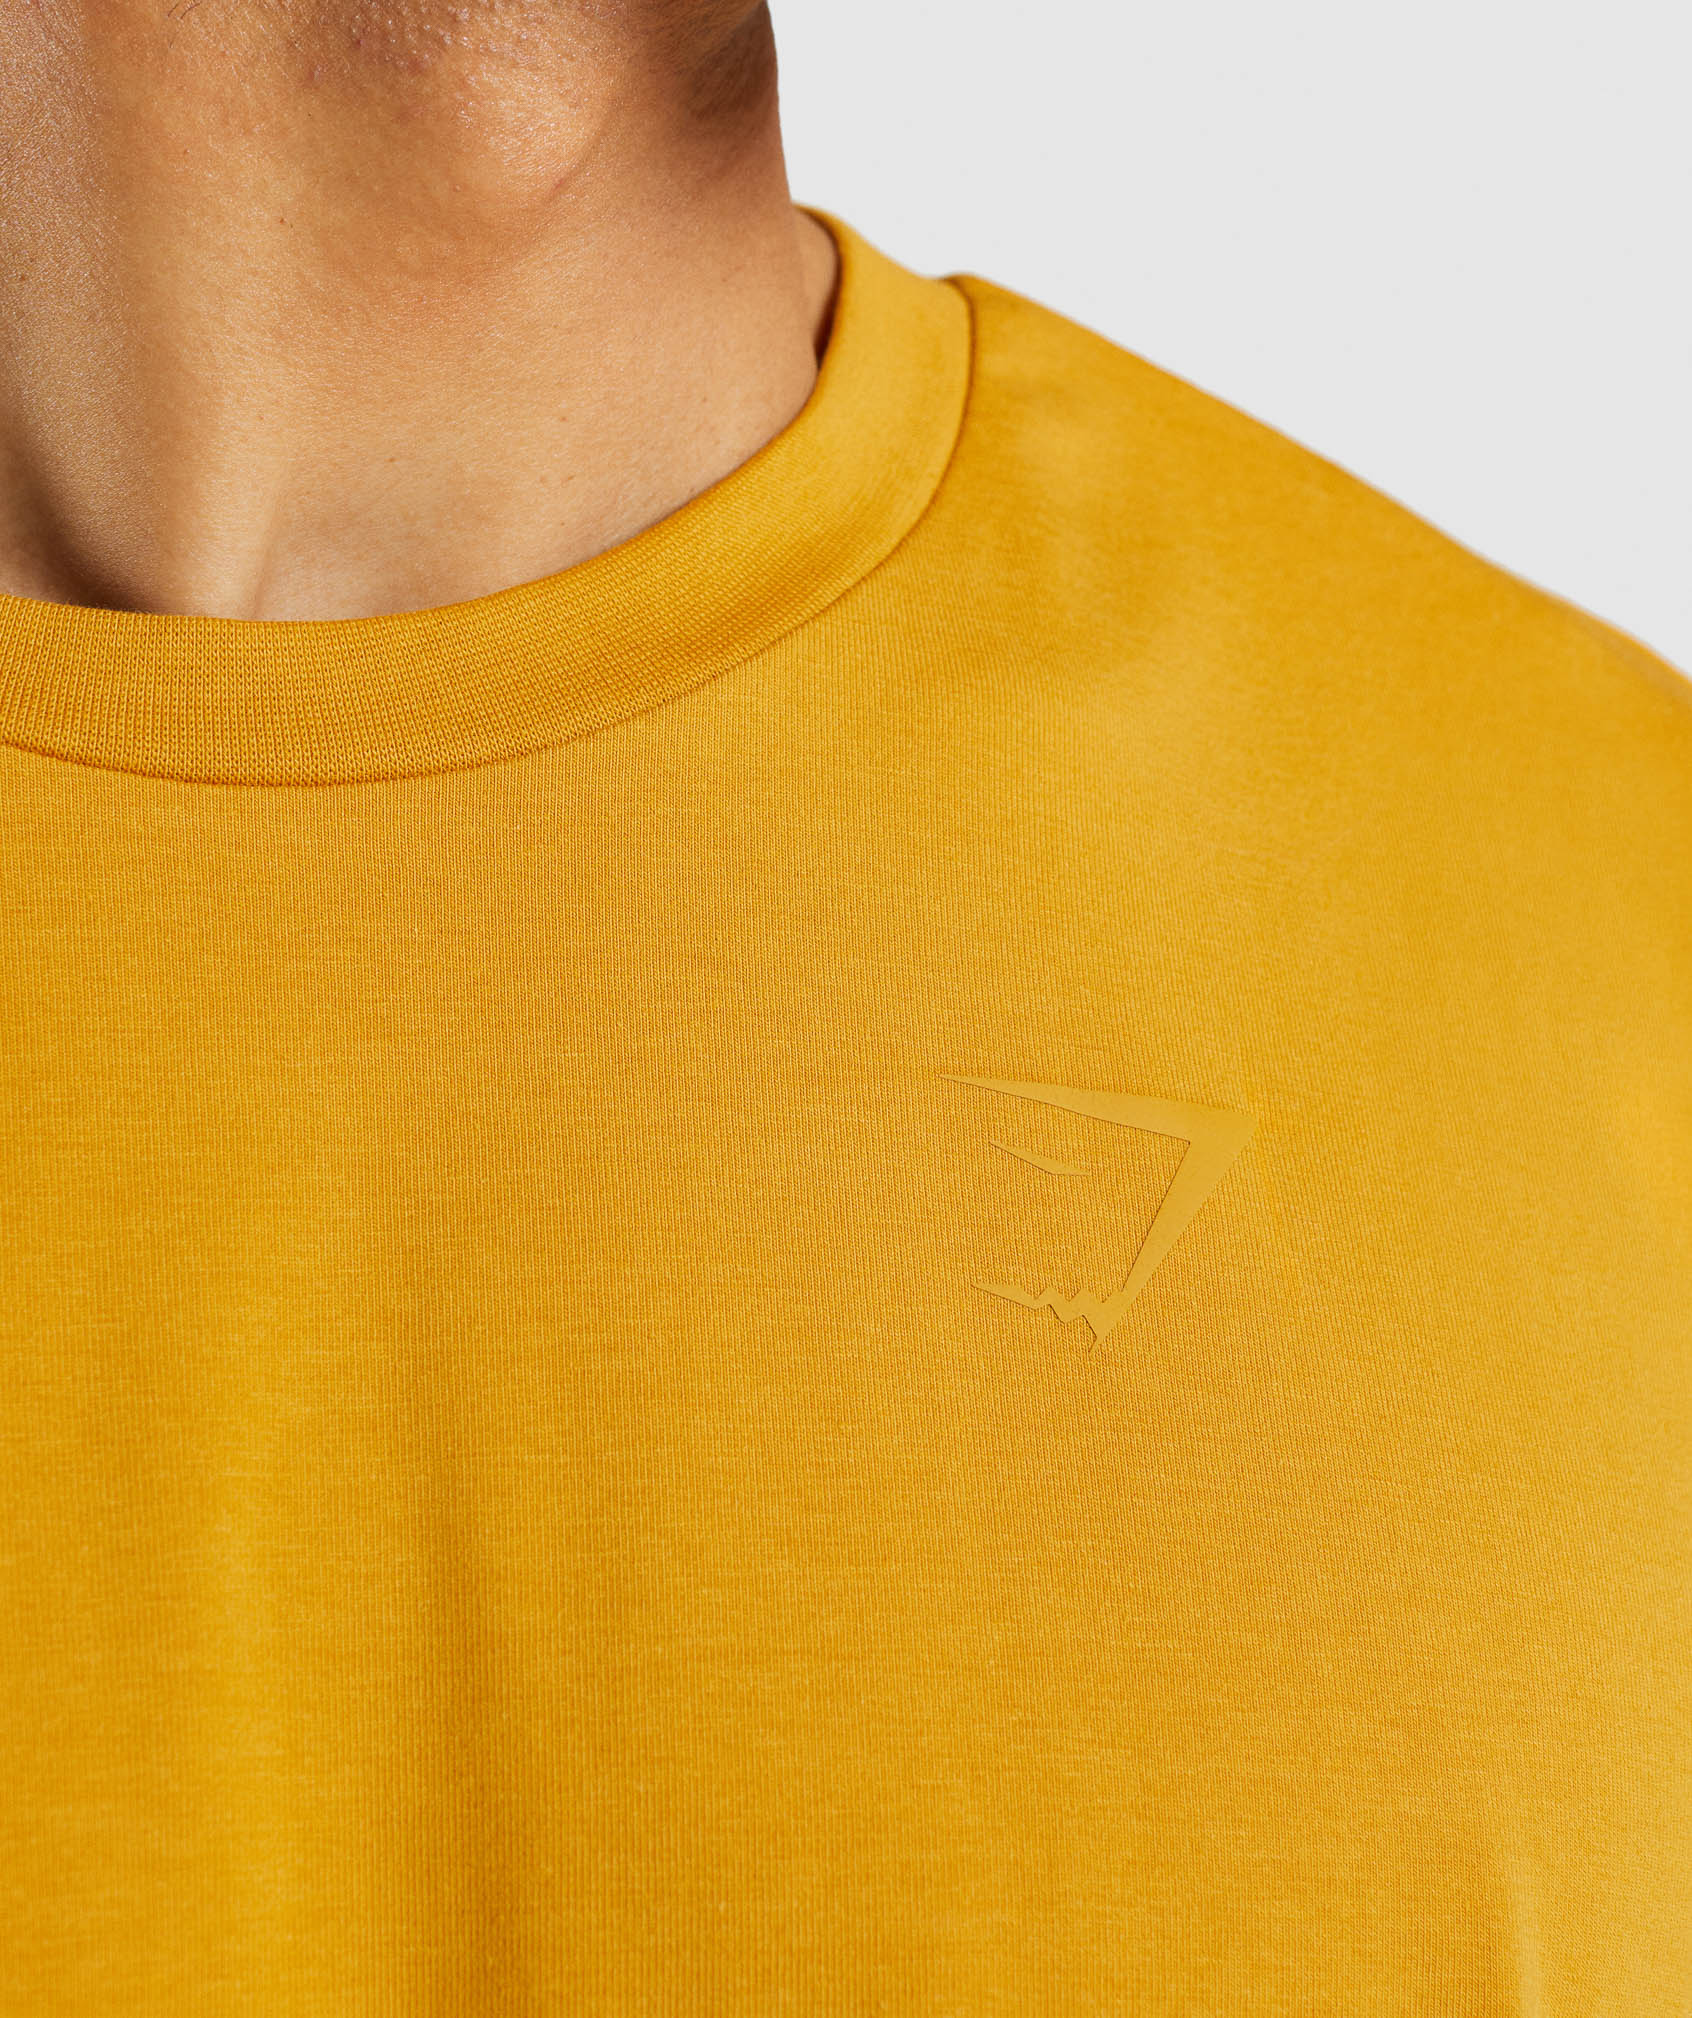 Sharkhead T-Shirt in Kanok Yellow